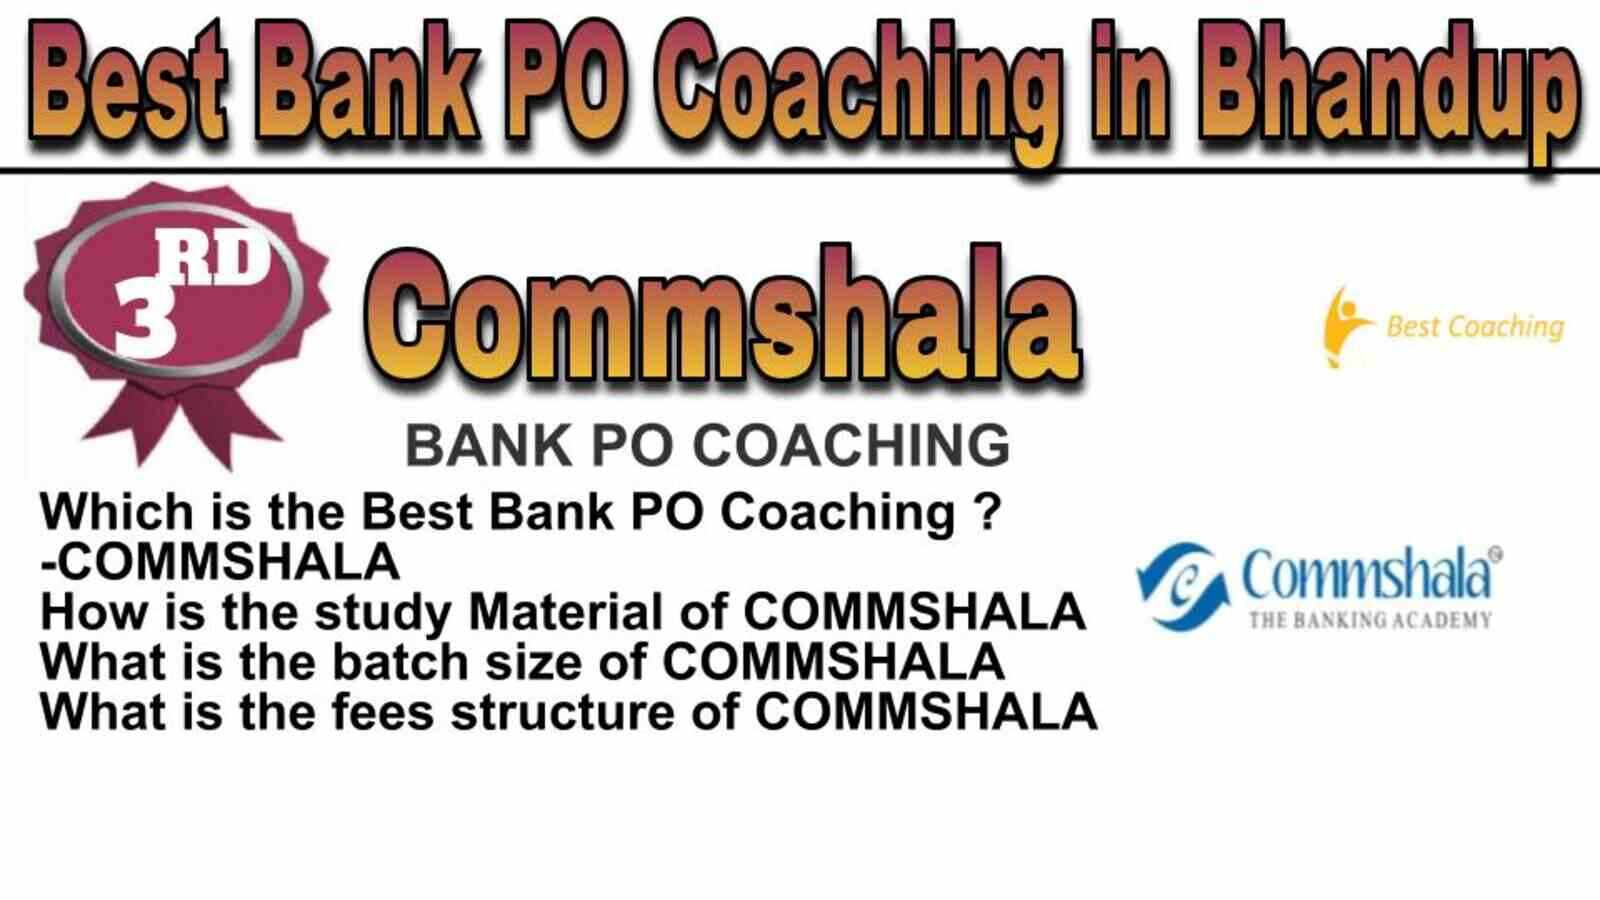 Rank 3 Top Bank PO Coaching in Bhandup